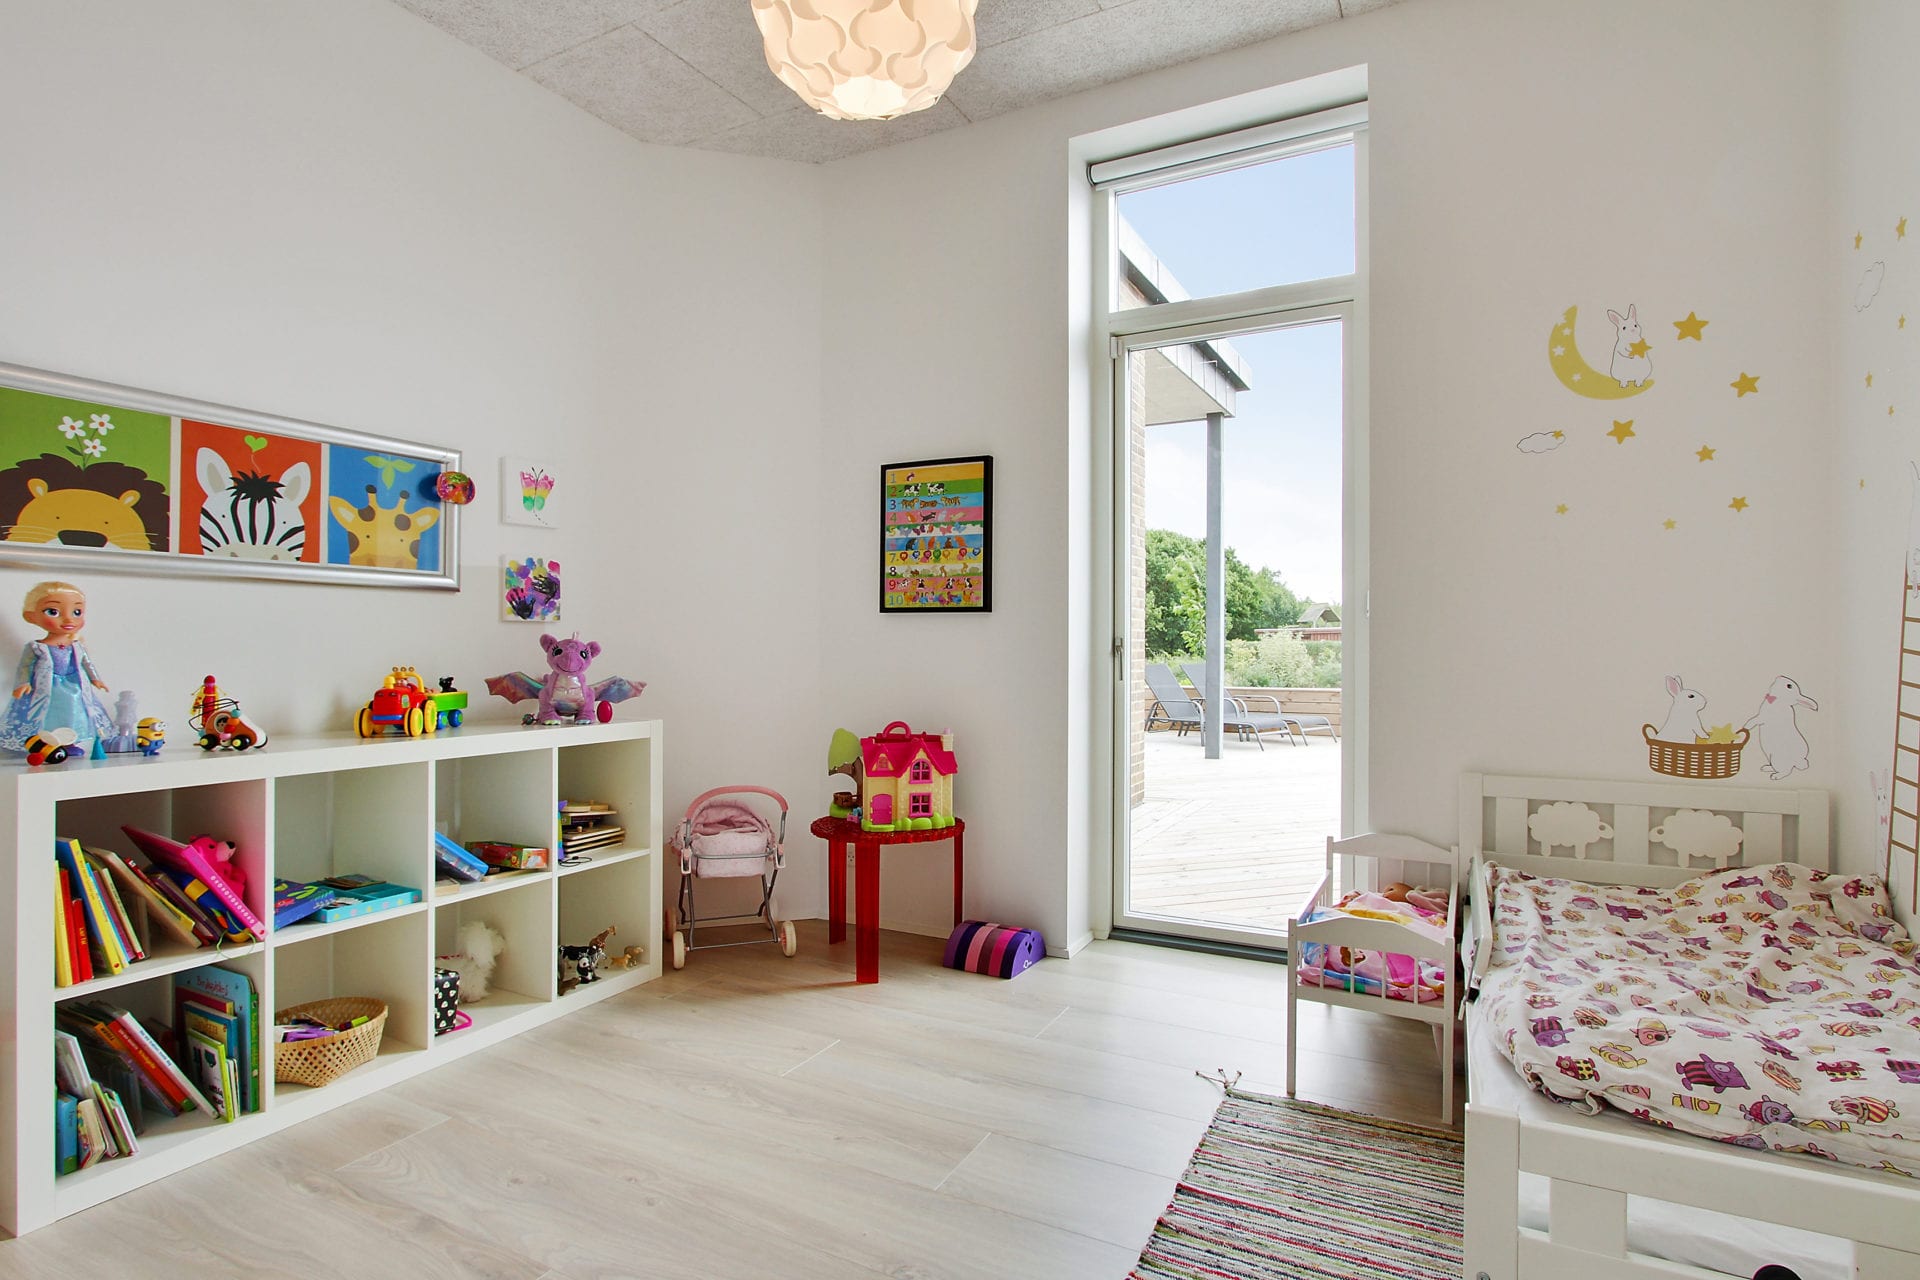 Helle og Poul bygger Arkitec - børneværelse